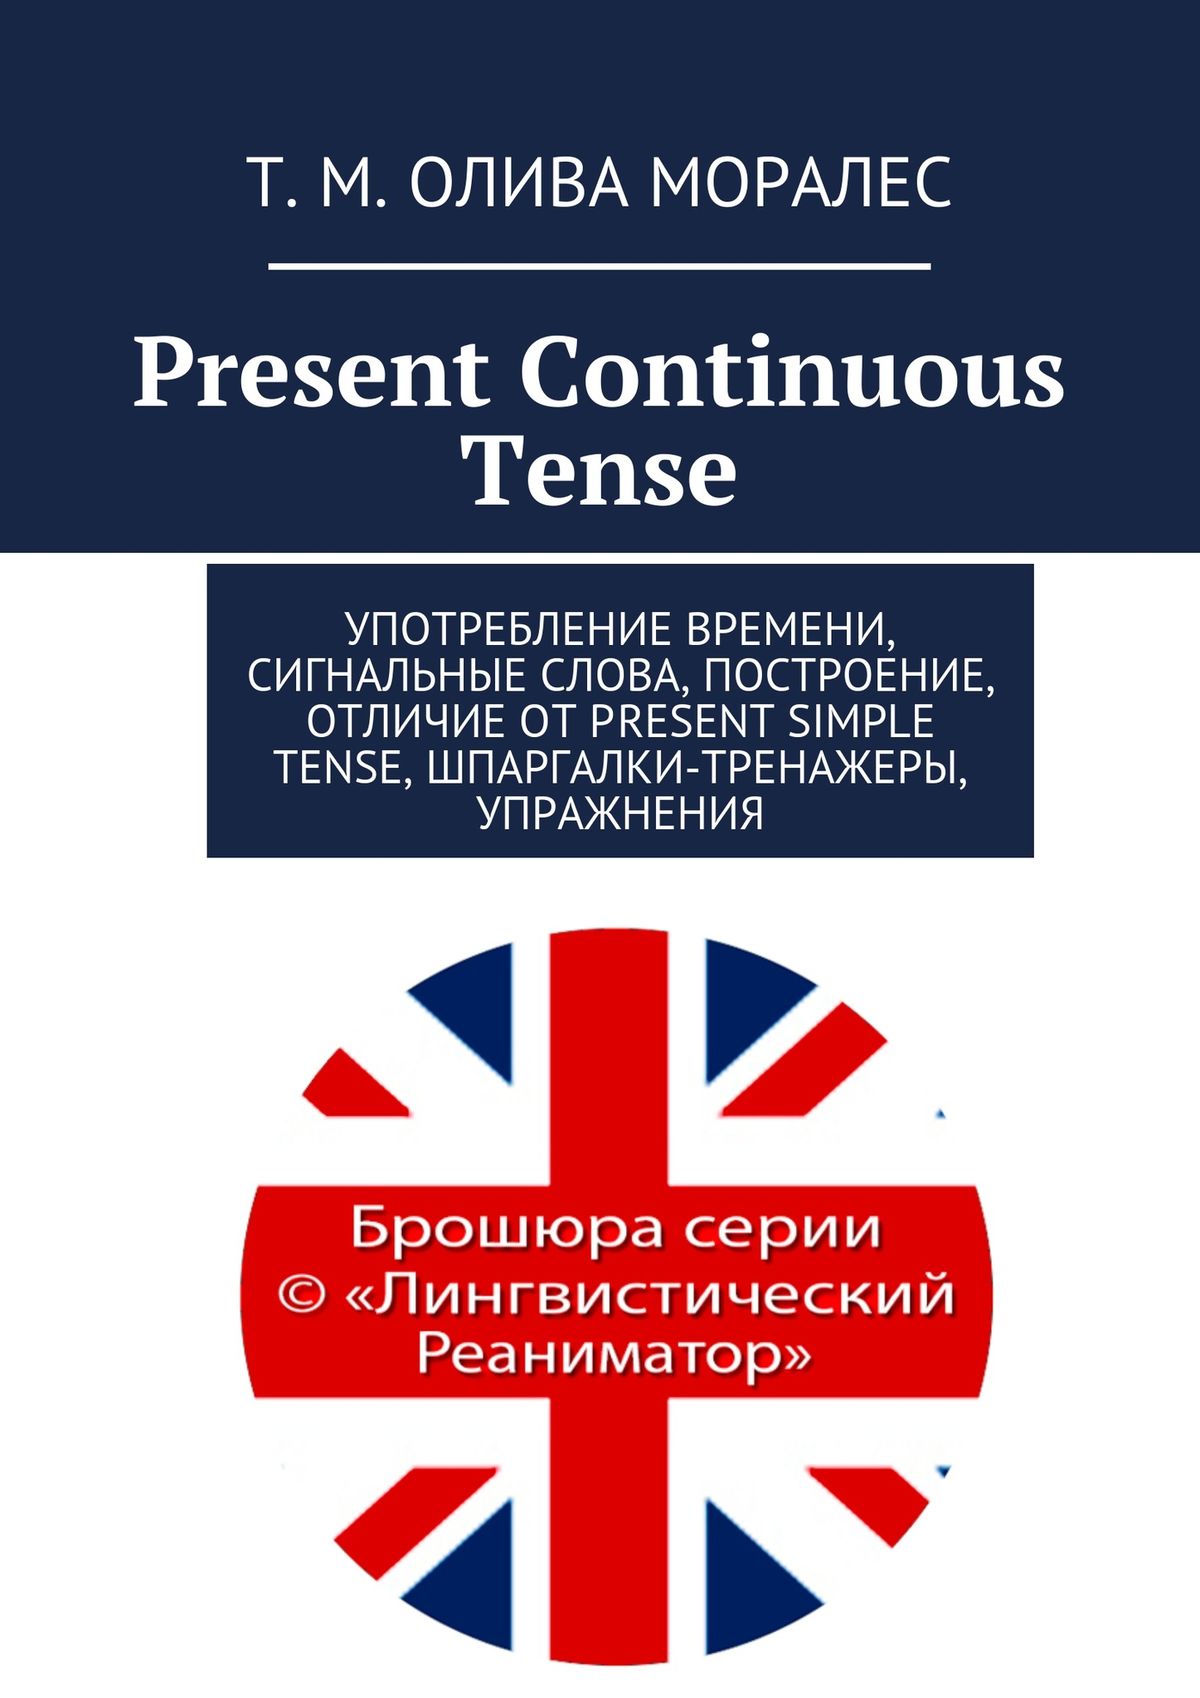 Present Continuous Tense.Употребление времени, сигнальные слова, построение, отличие от Present Simple Tense, шпаргалки-тренажеры, упражнения